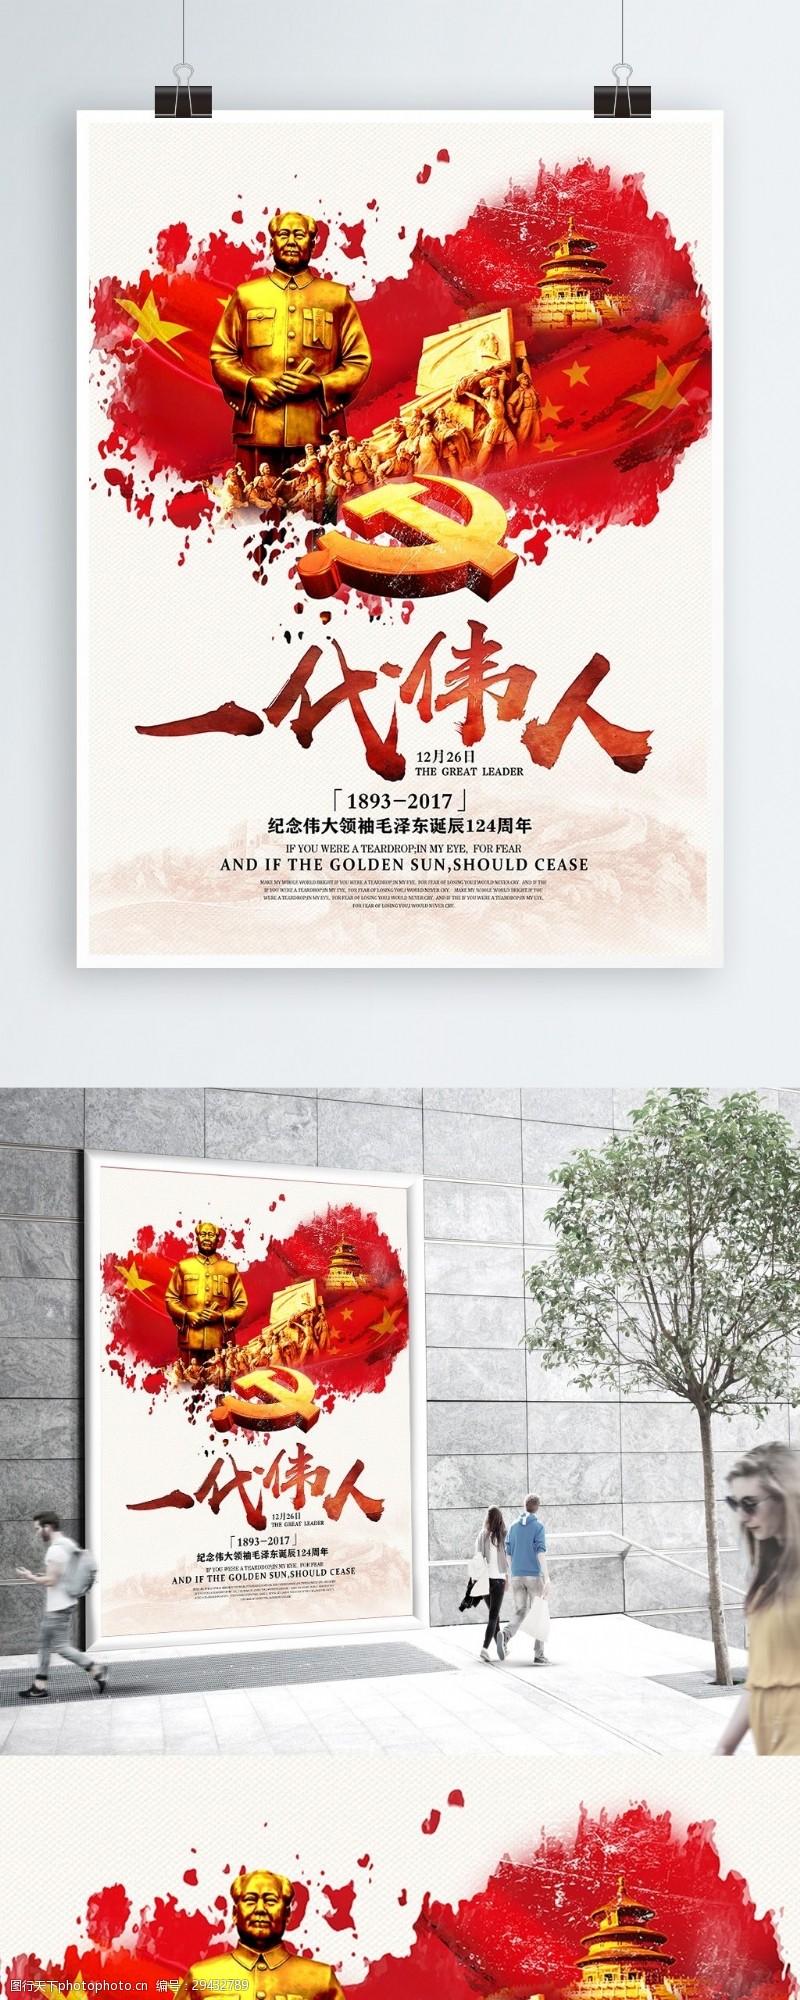 建党纪念日一代伟人毛泽东诞辰124周年纪念党建海报